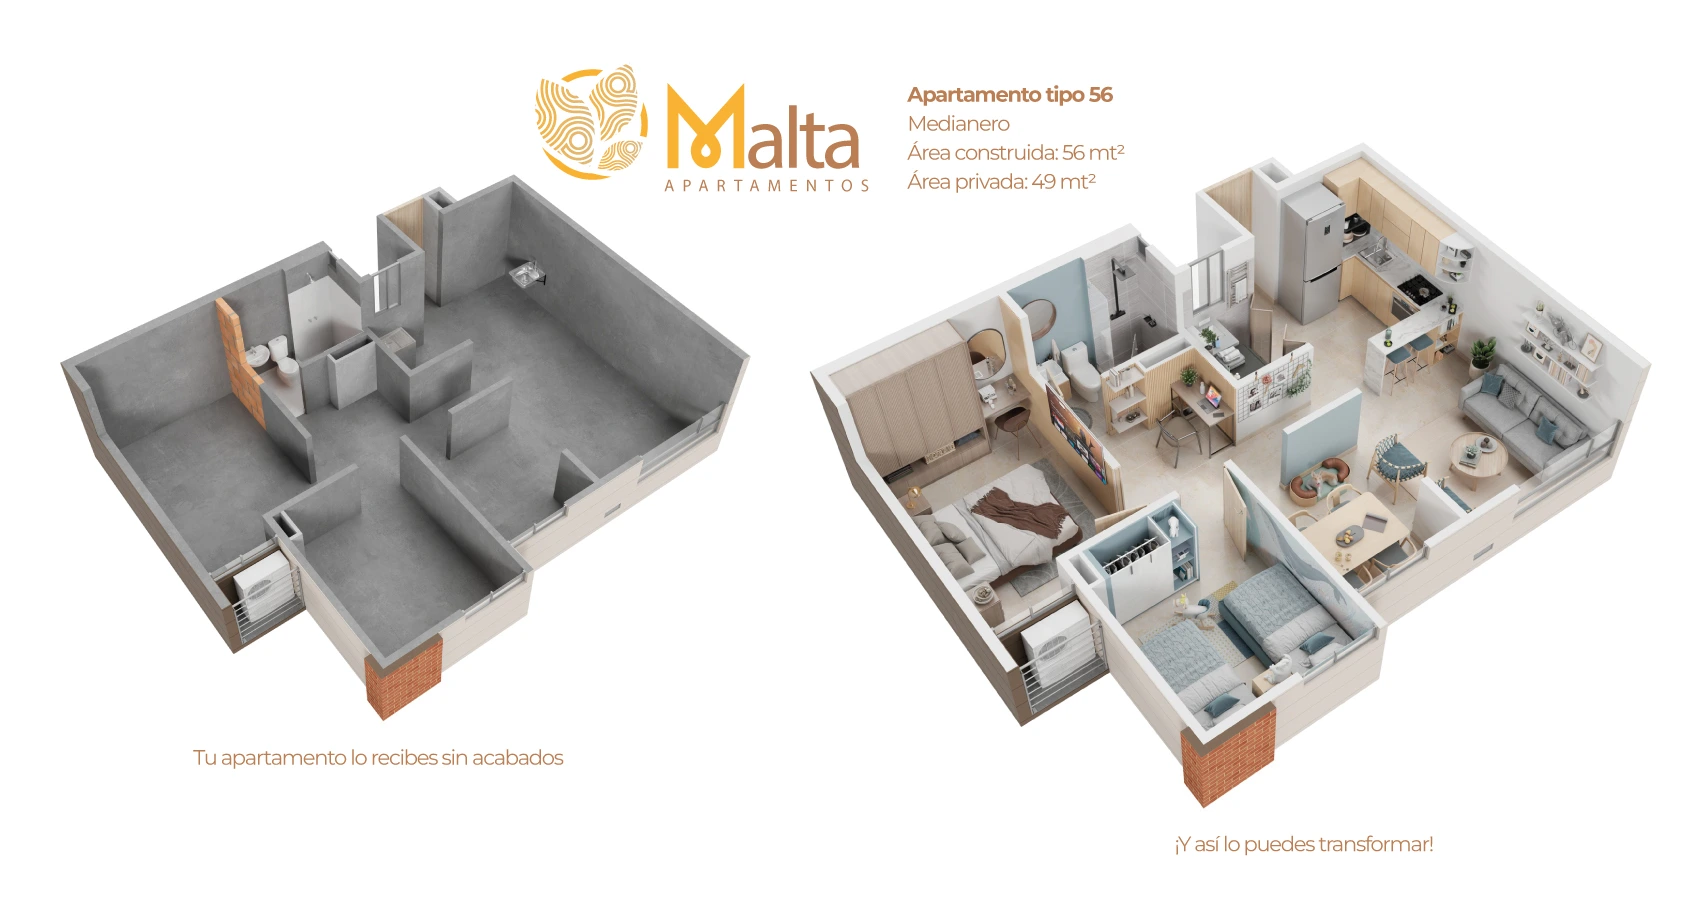 Malta proyecto de vivienda en barranquilla con subsidio de vivienda 